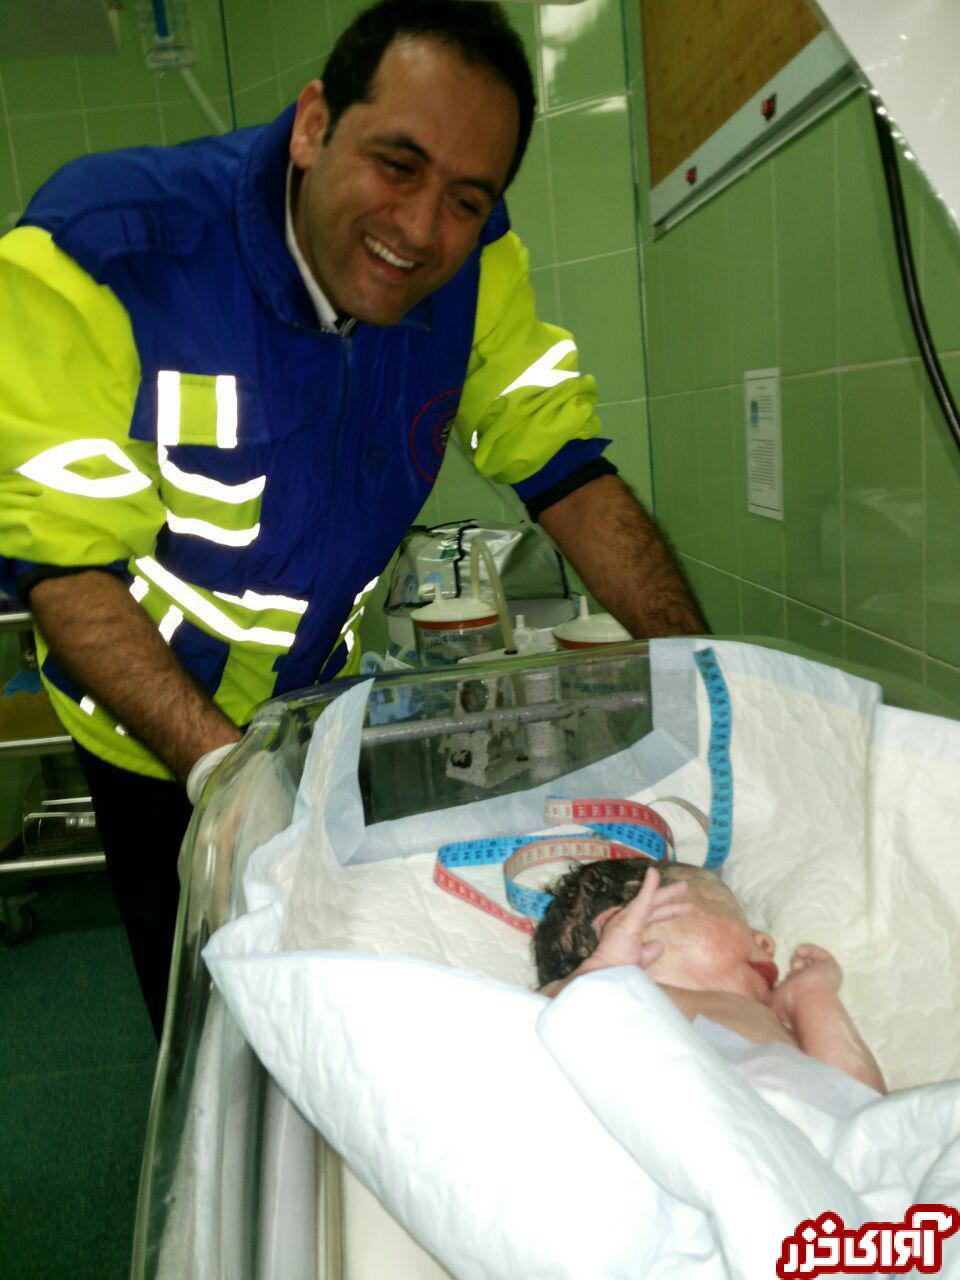 تولد نوزاد در آمبولانس هنگام انتقال مادر باردار به بیمارستان در کلارآباد